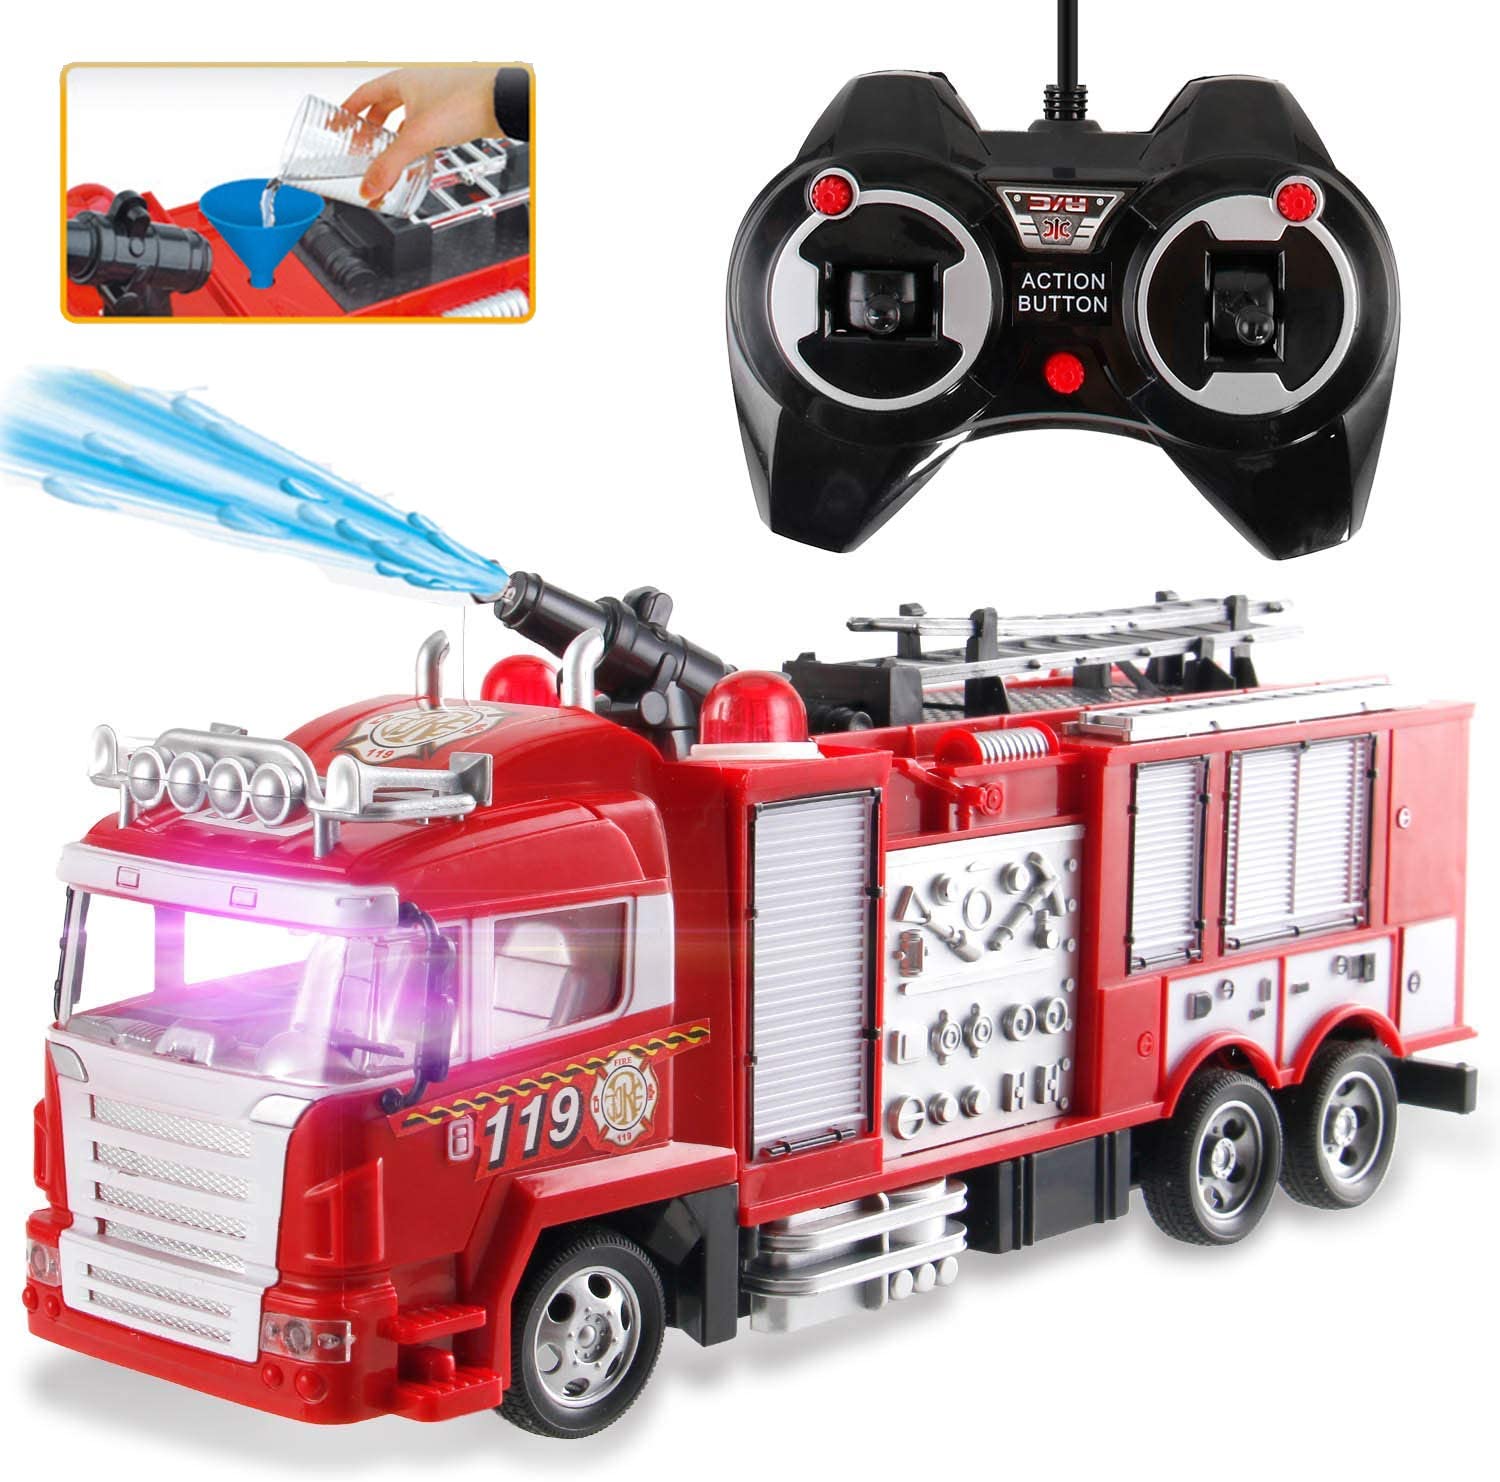 100% Nouveau, camion de pompier voiture transformant robot voiture de  sauvetage incendie jouet rc camion voiture de transport pour l'âge 4-12,  jouet pompier télécommande telecommande jouer véhicule pour ki